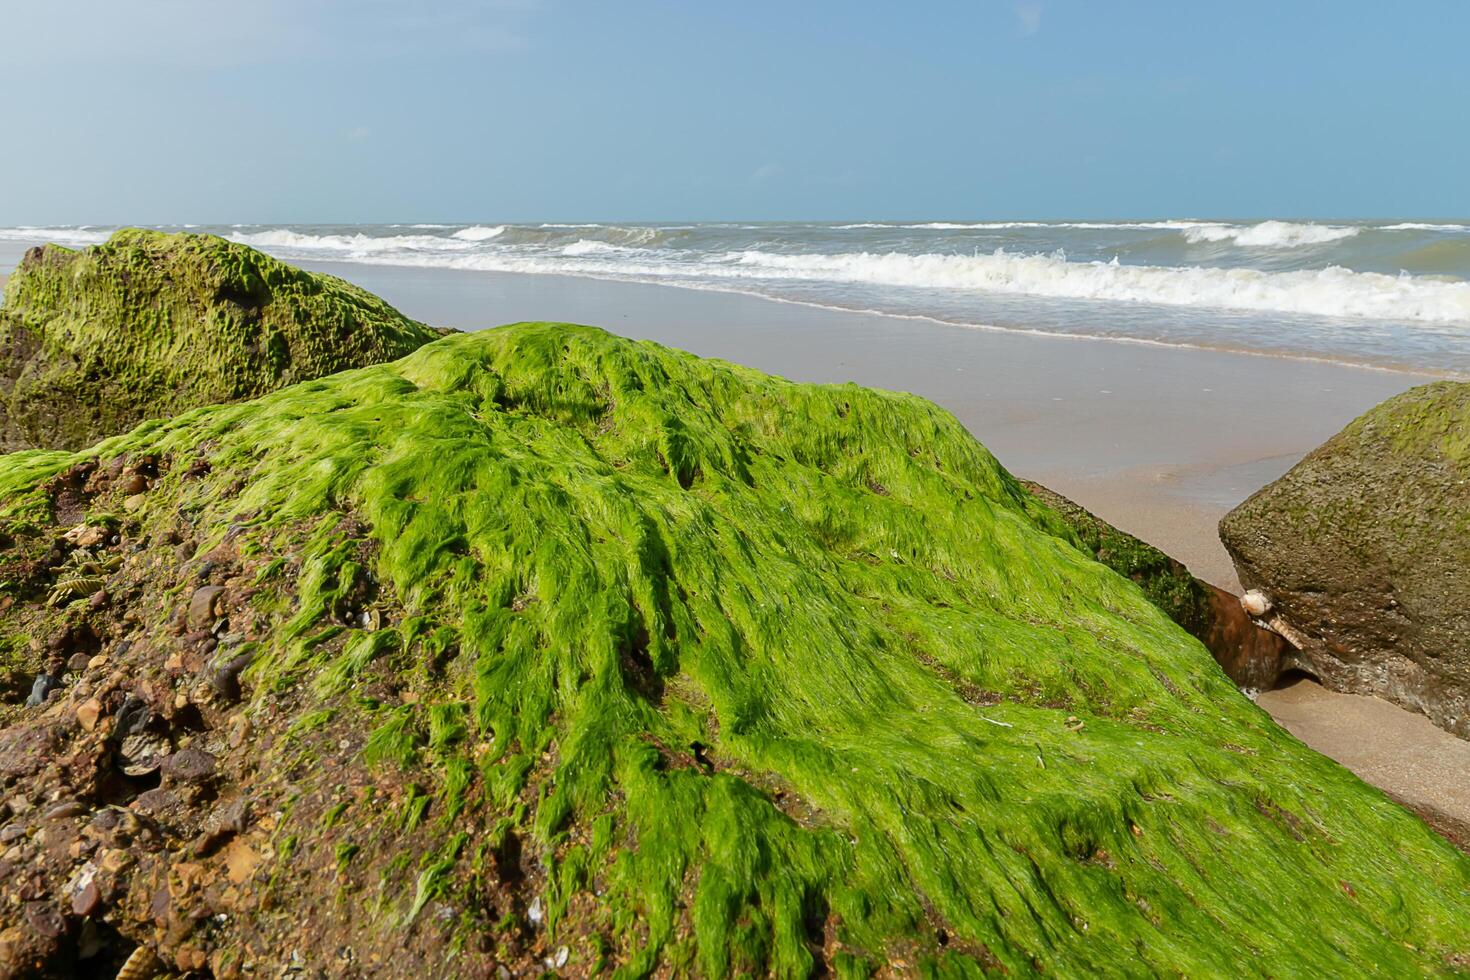 grön alger på stenar foto